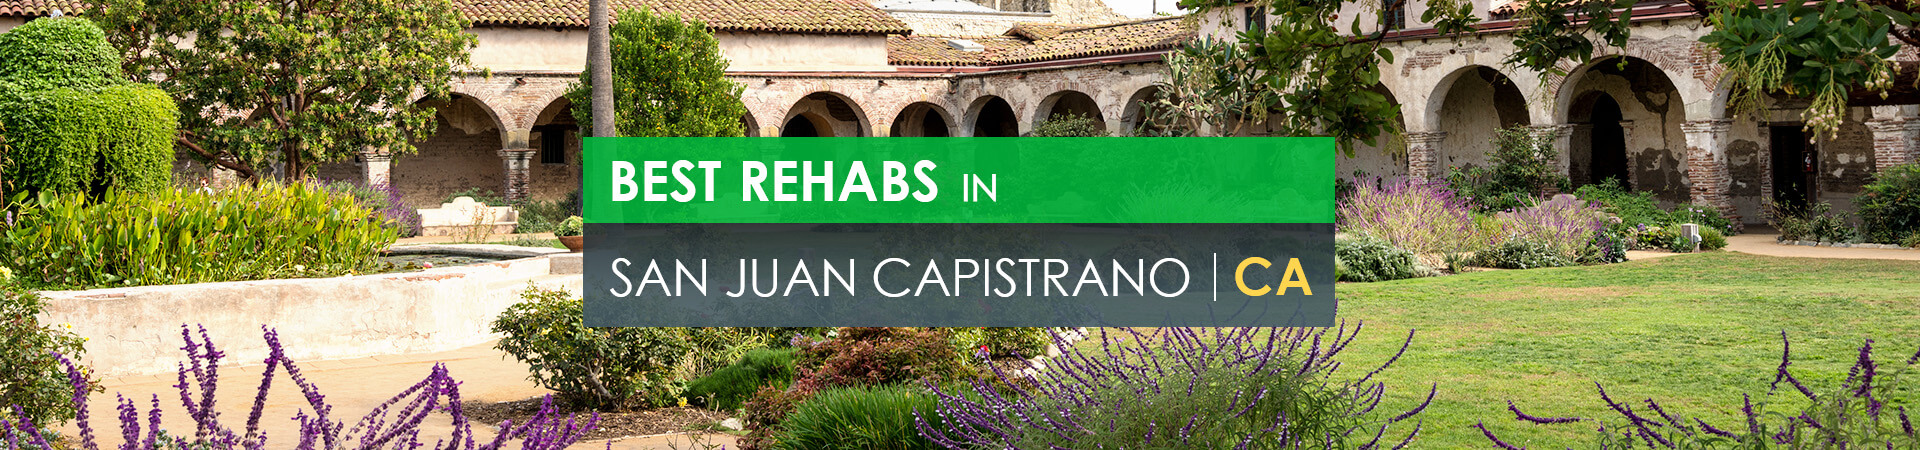 Best rehabs in San Juan Capistrano, CA